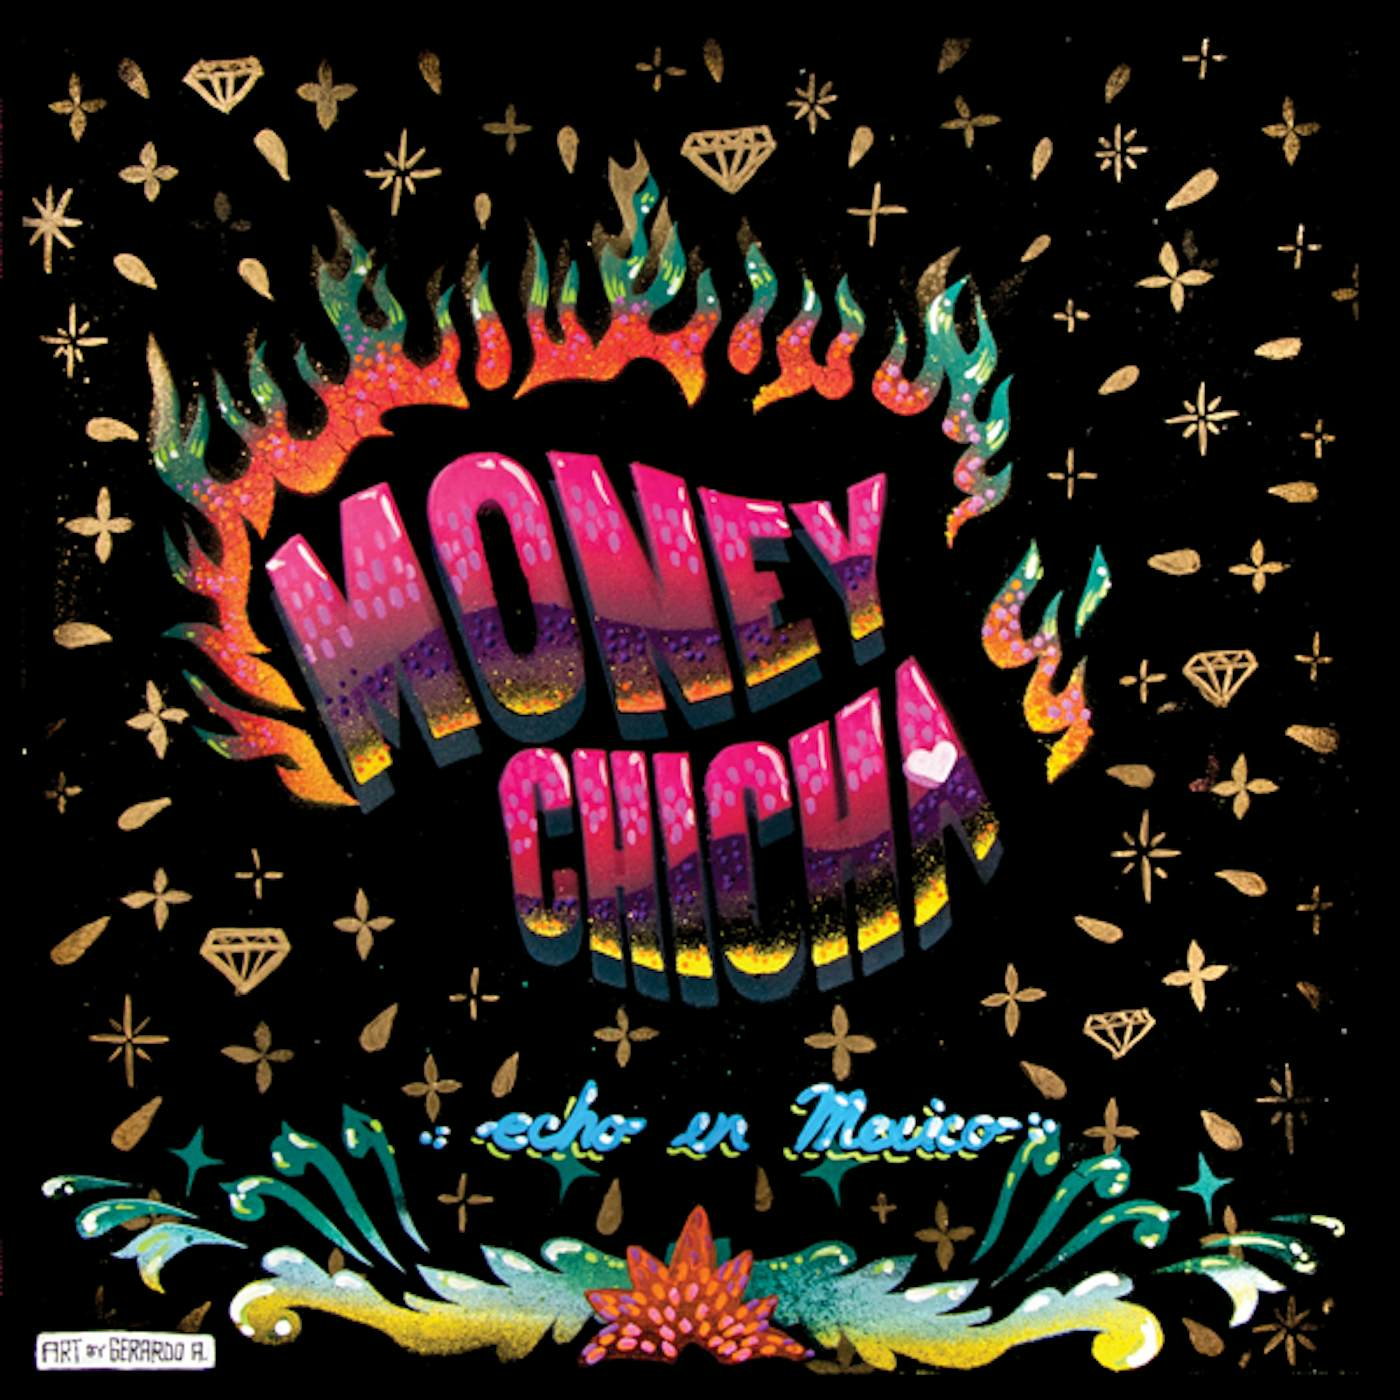 Money Chicha Echo en Mexico Vinyl Record